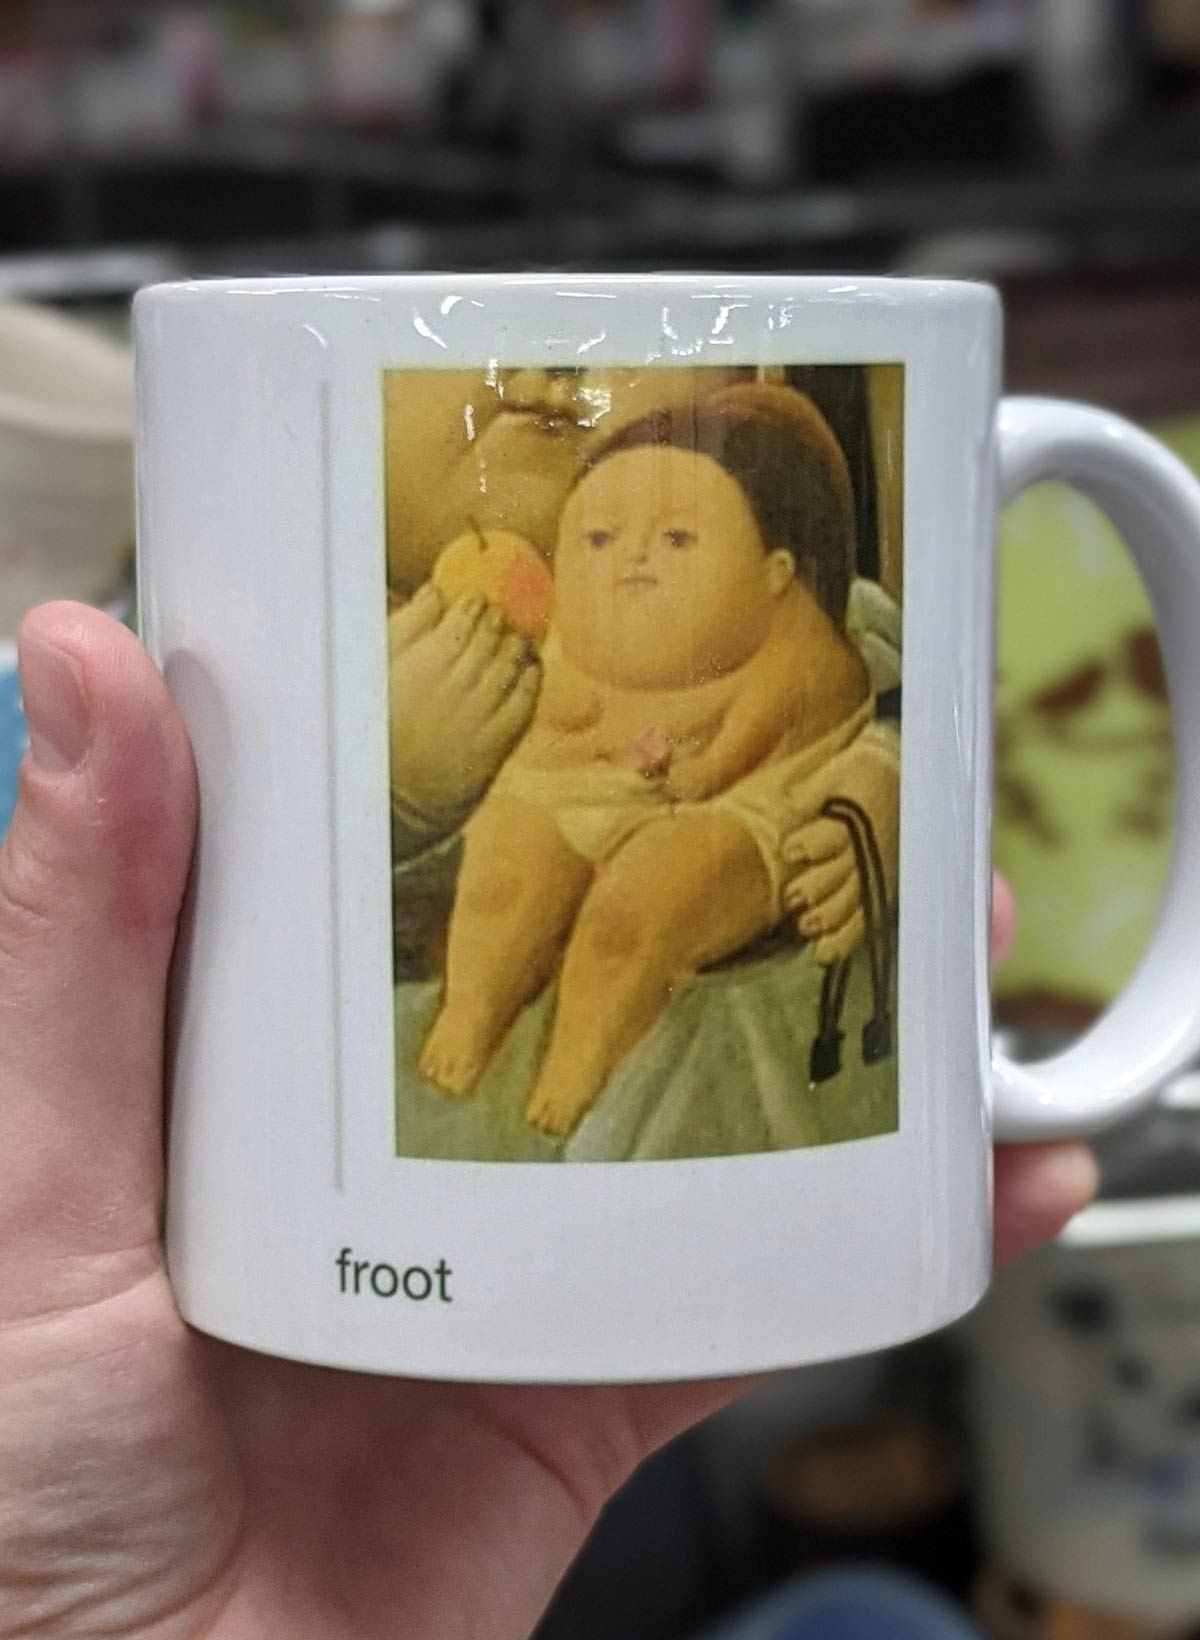 This mug I found at Goodwill